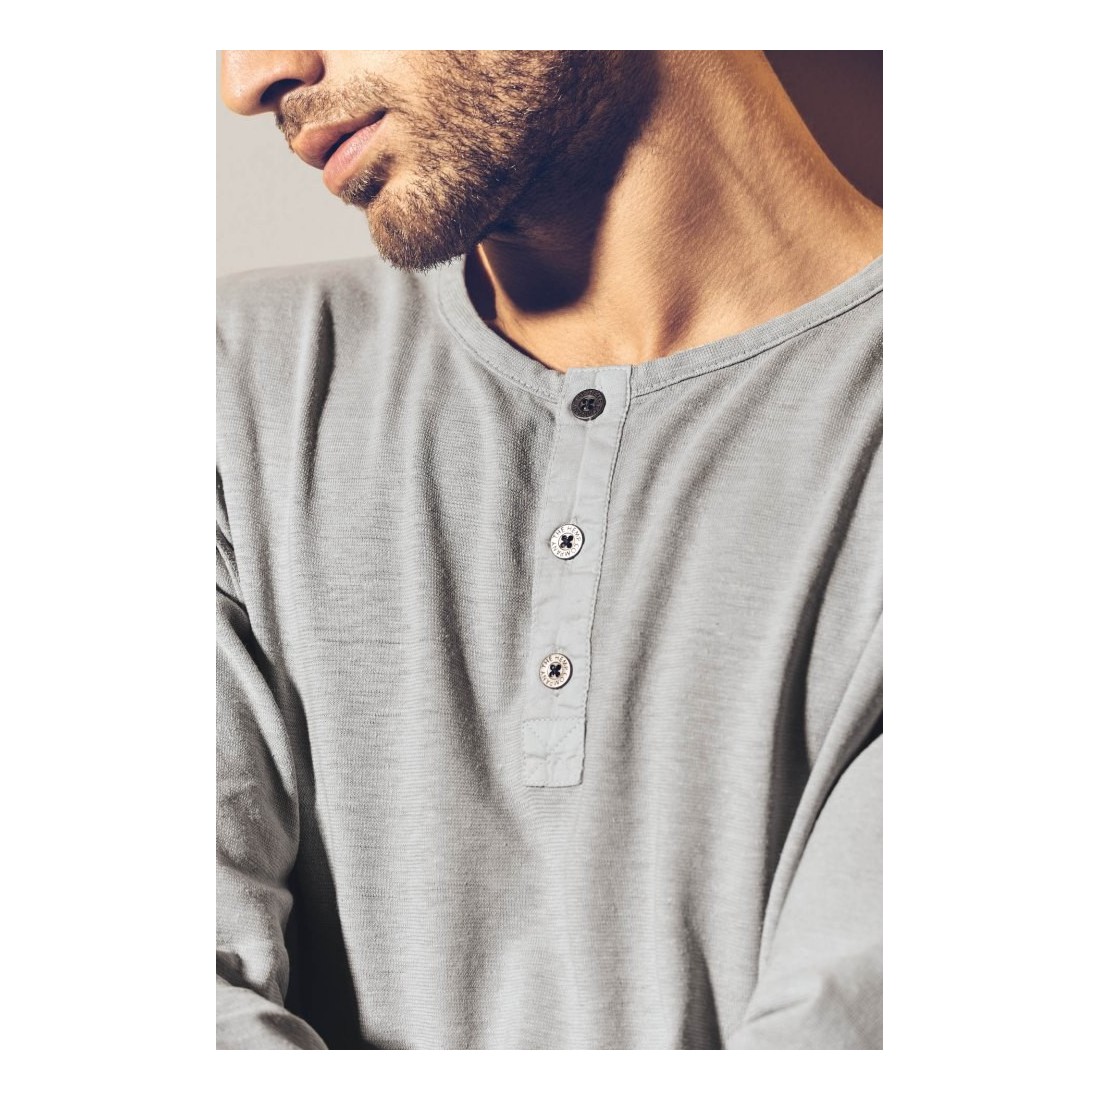 Henley t-shirt - Men's buttoned